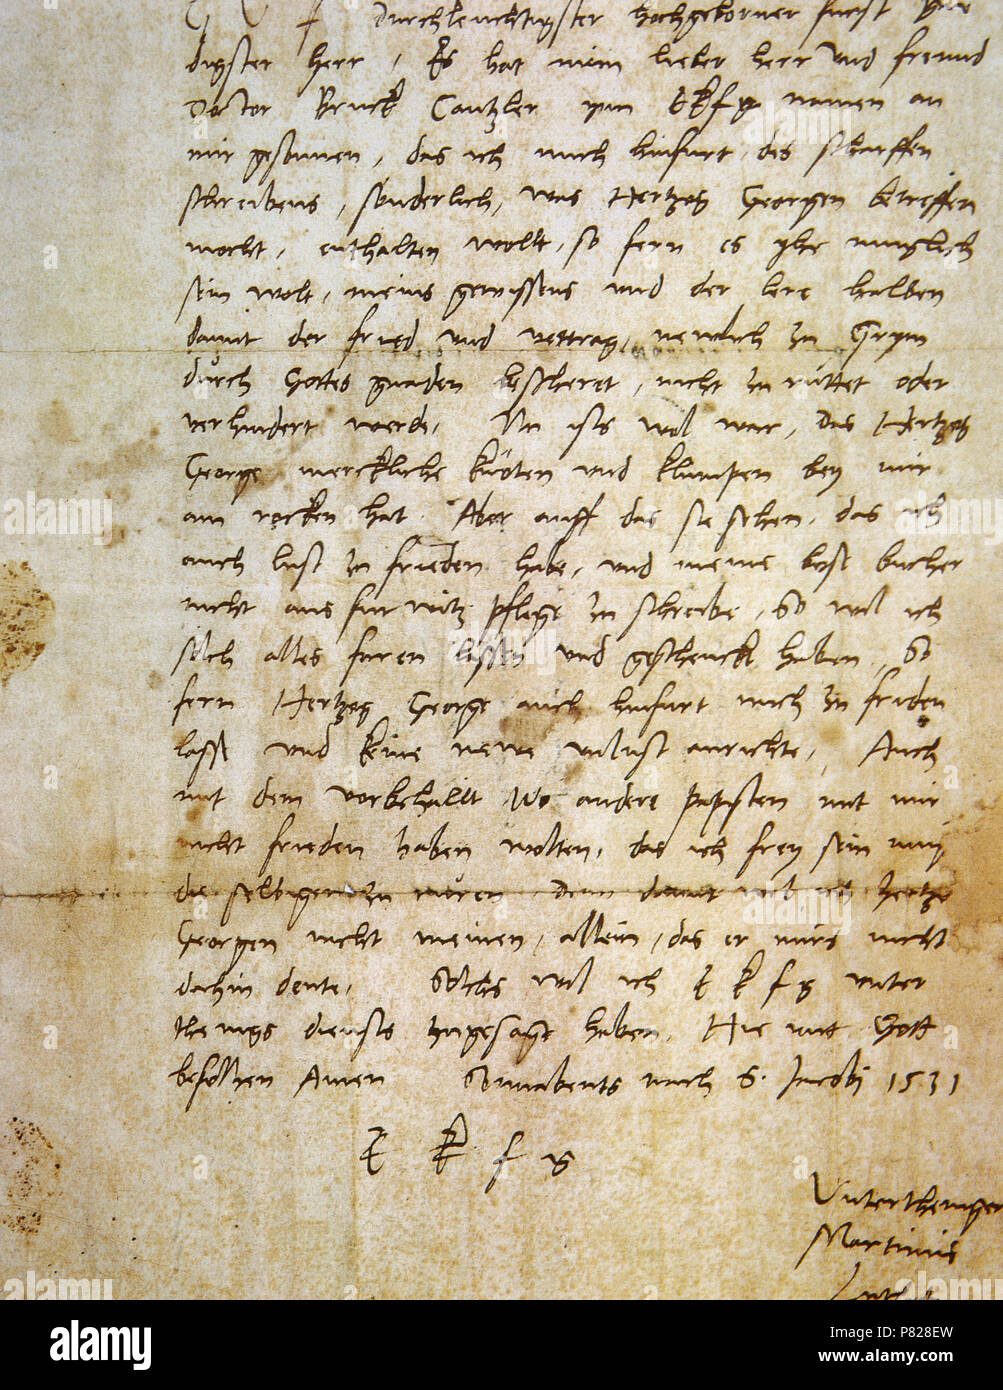 Martín Lutero (1483-1546). Teólogo alemán, figura de la Reforma Protestante. Carta manuscrita de Lutero (1531). La Biblioteca Apostólica Vaticana. Ciudad del Vaticano. Foto de stock